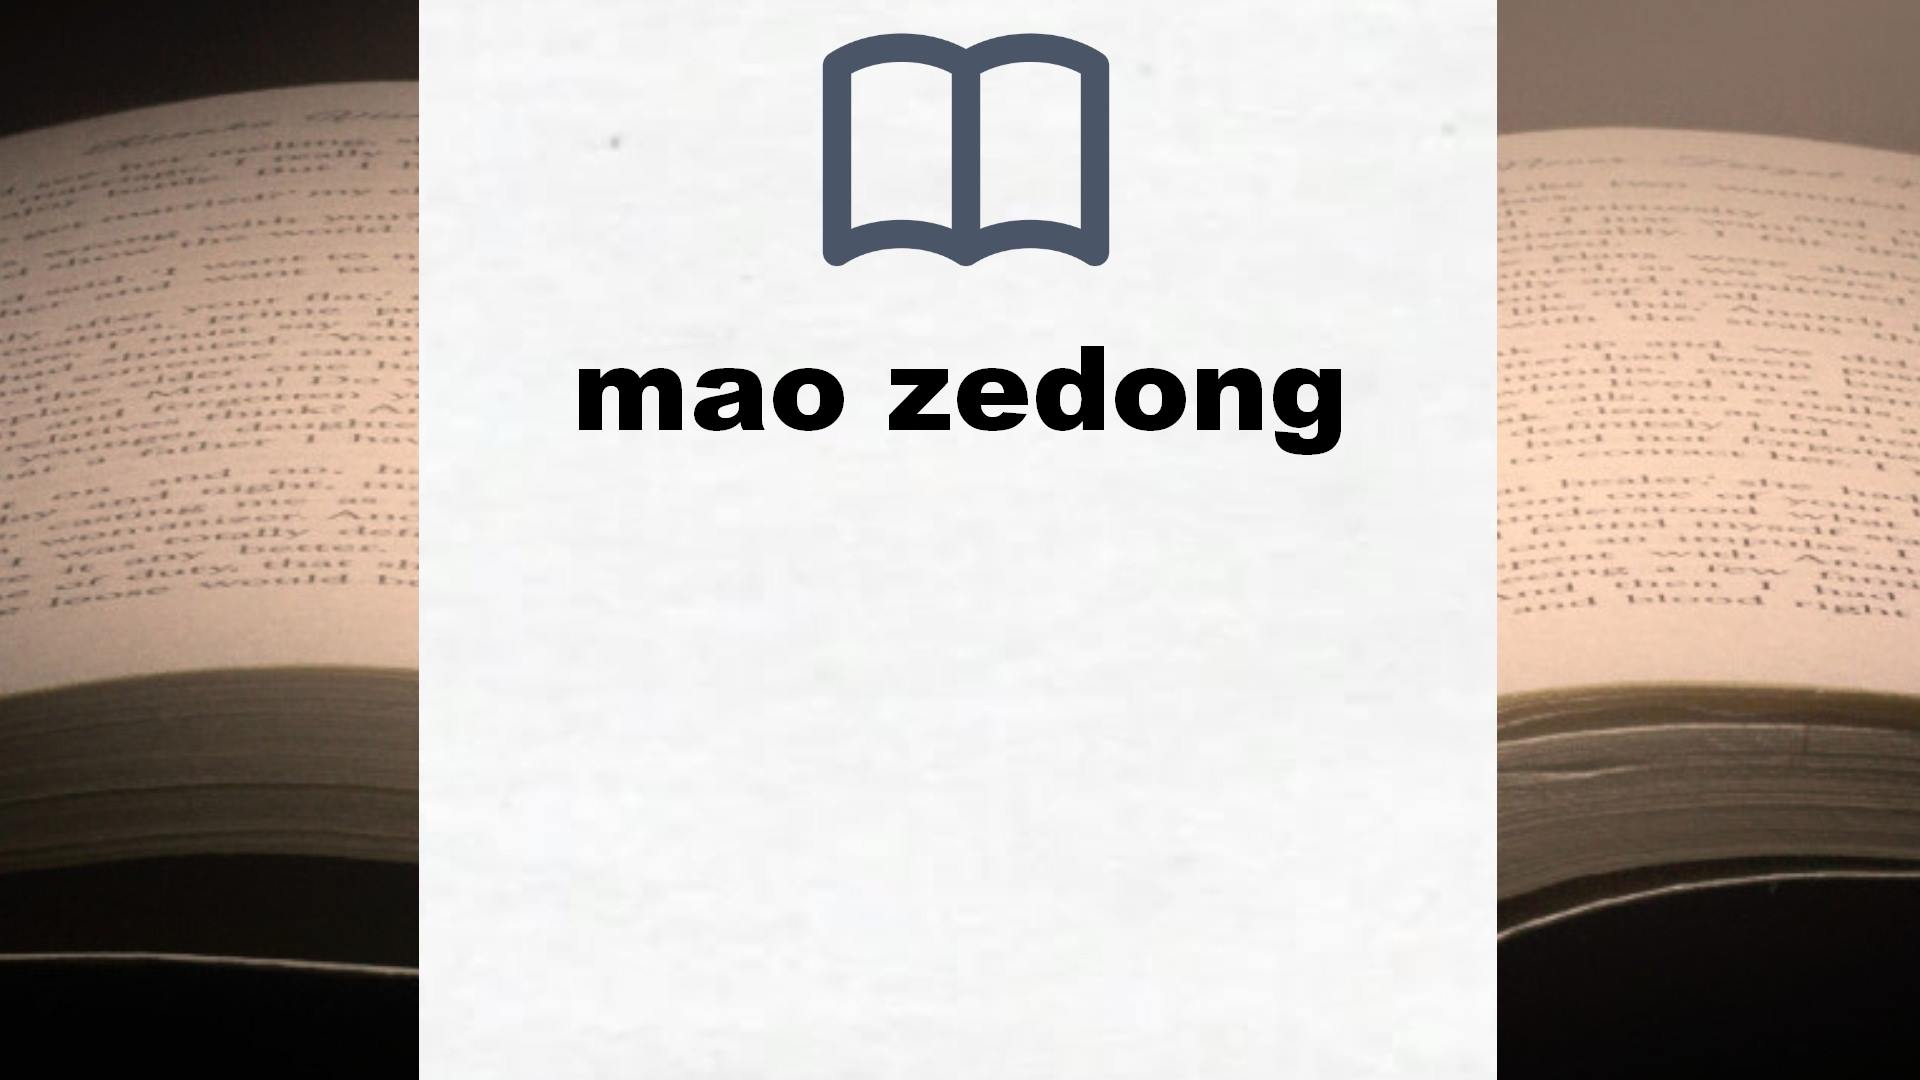 Libros sobre mao zedong